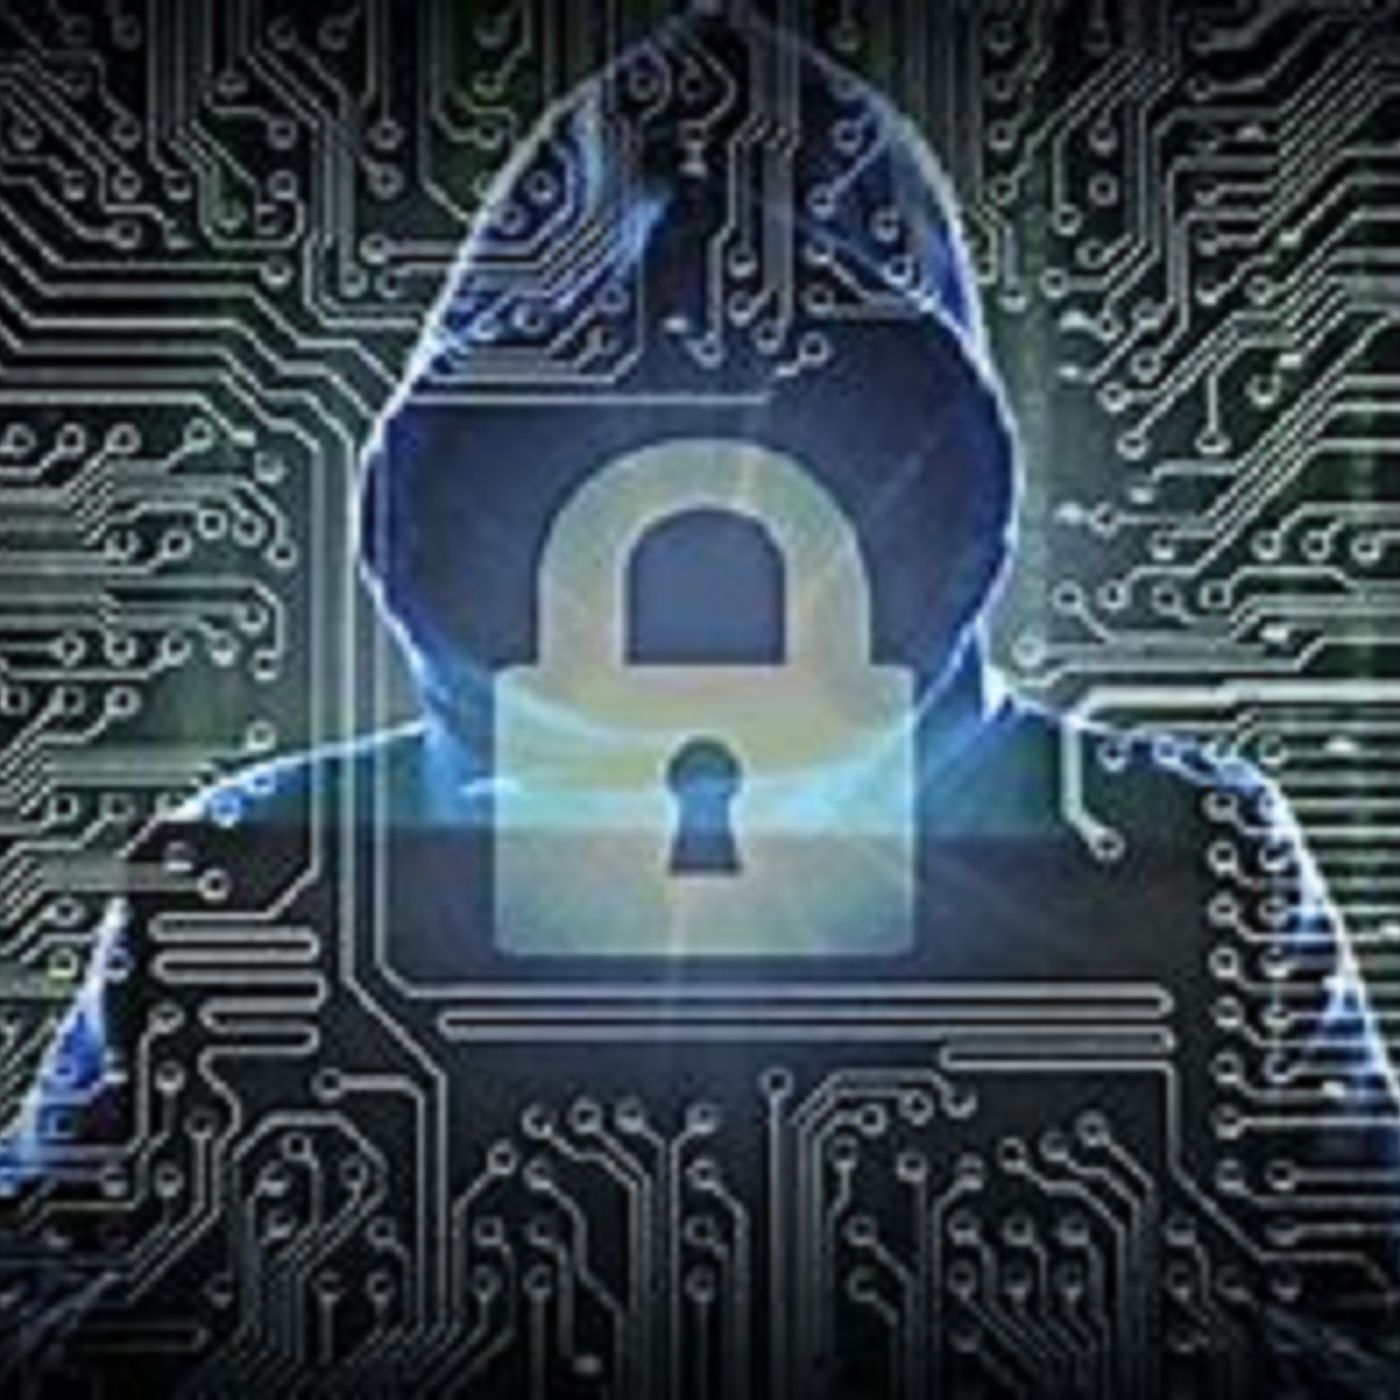 German Steelmaker Thyssenkrupp Confirms Ransomware Attack